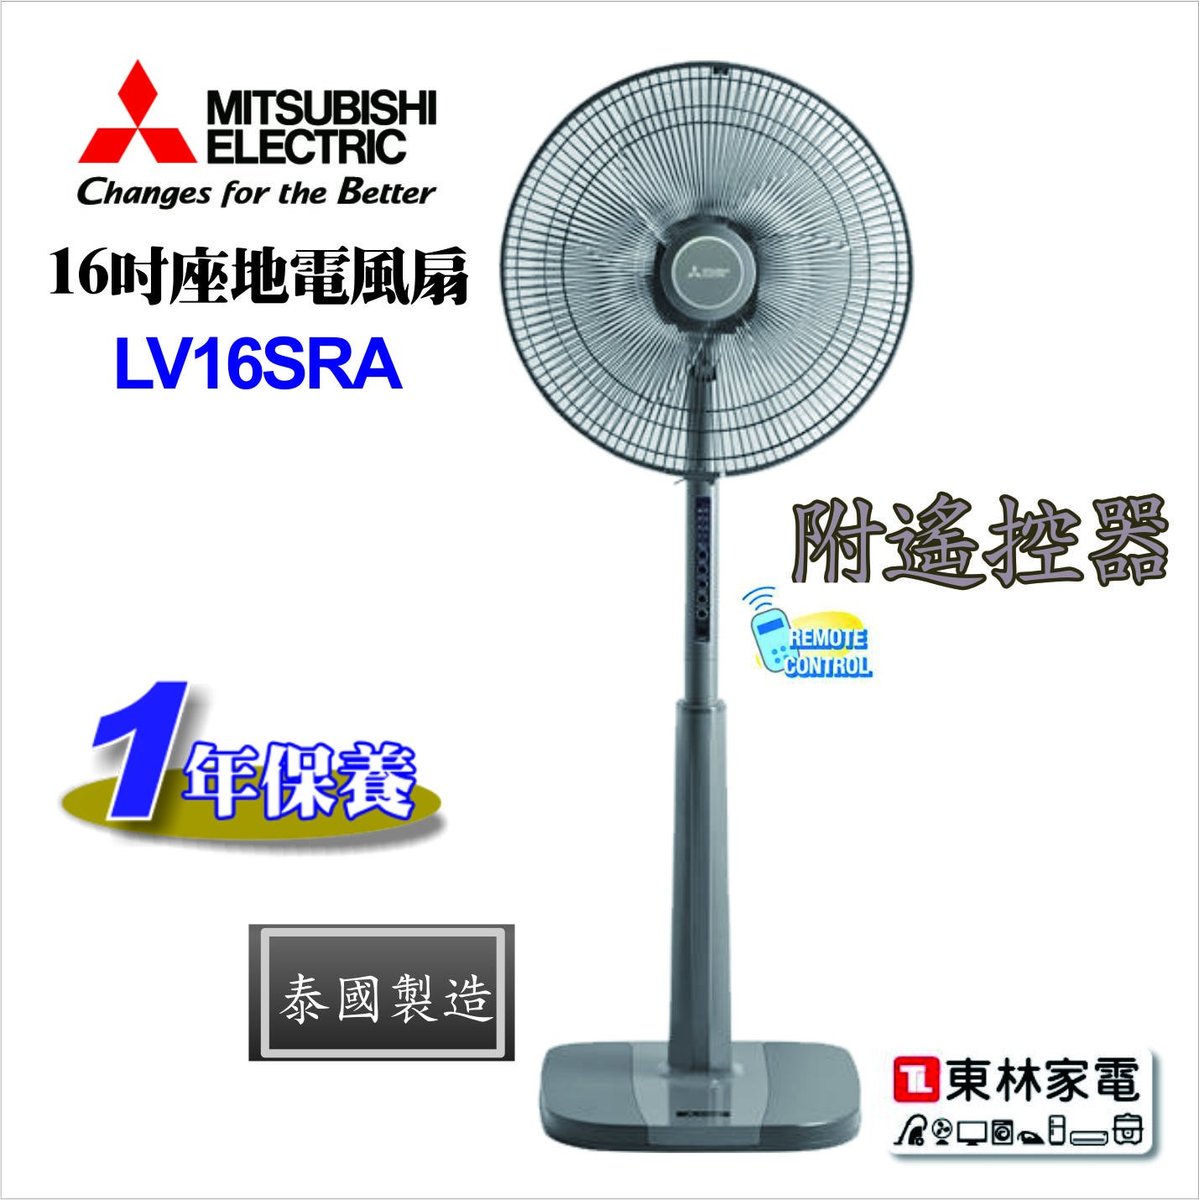 三菱電機 16吋座地遙控韻律扇lv16sra Hktvmall 香港最大網購平台